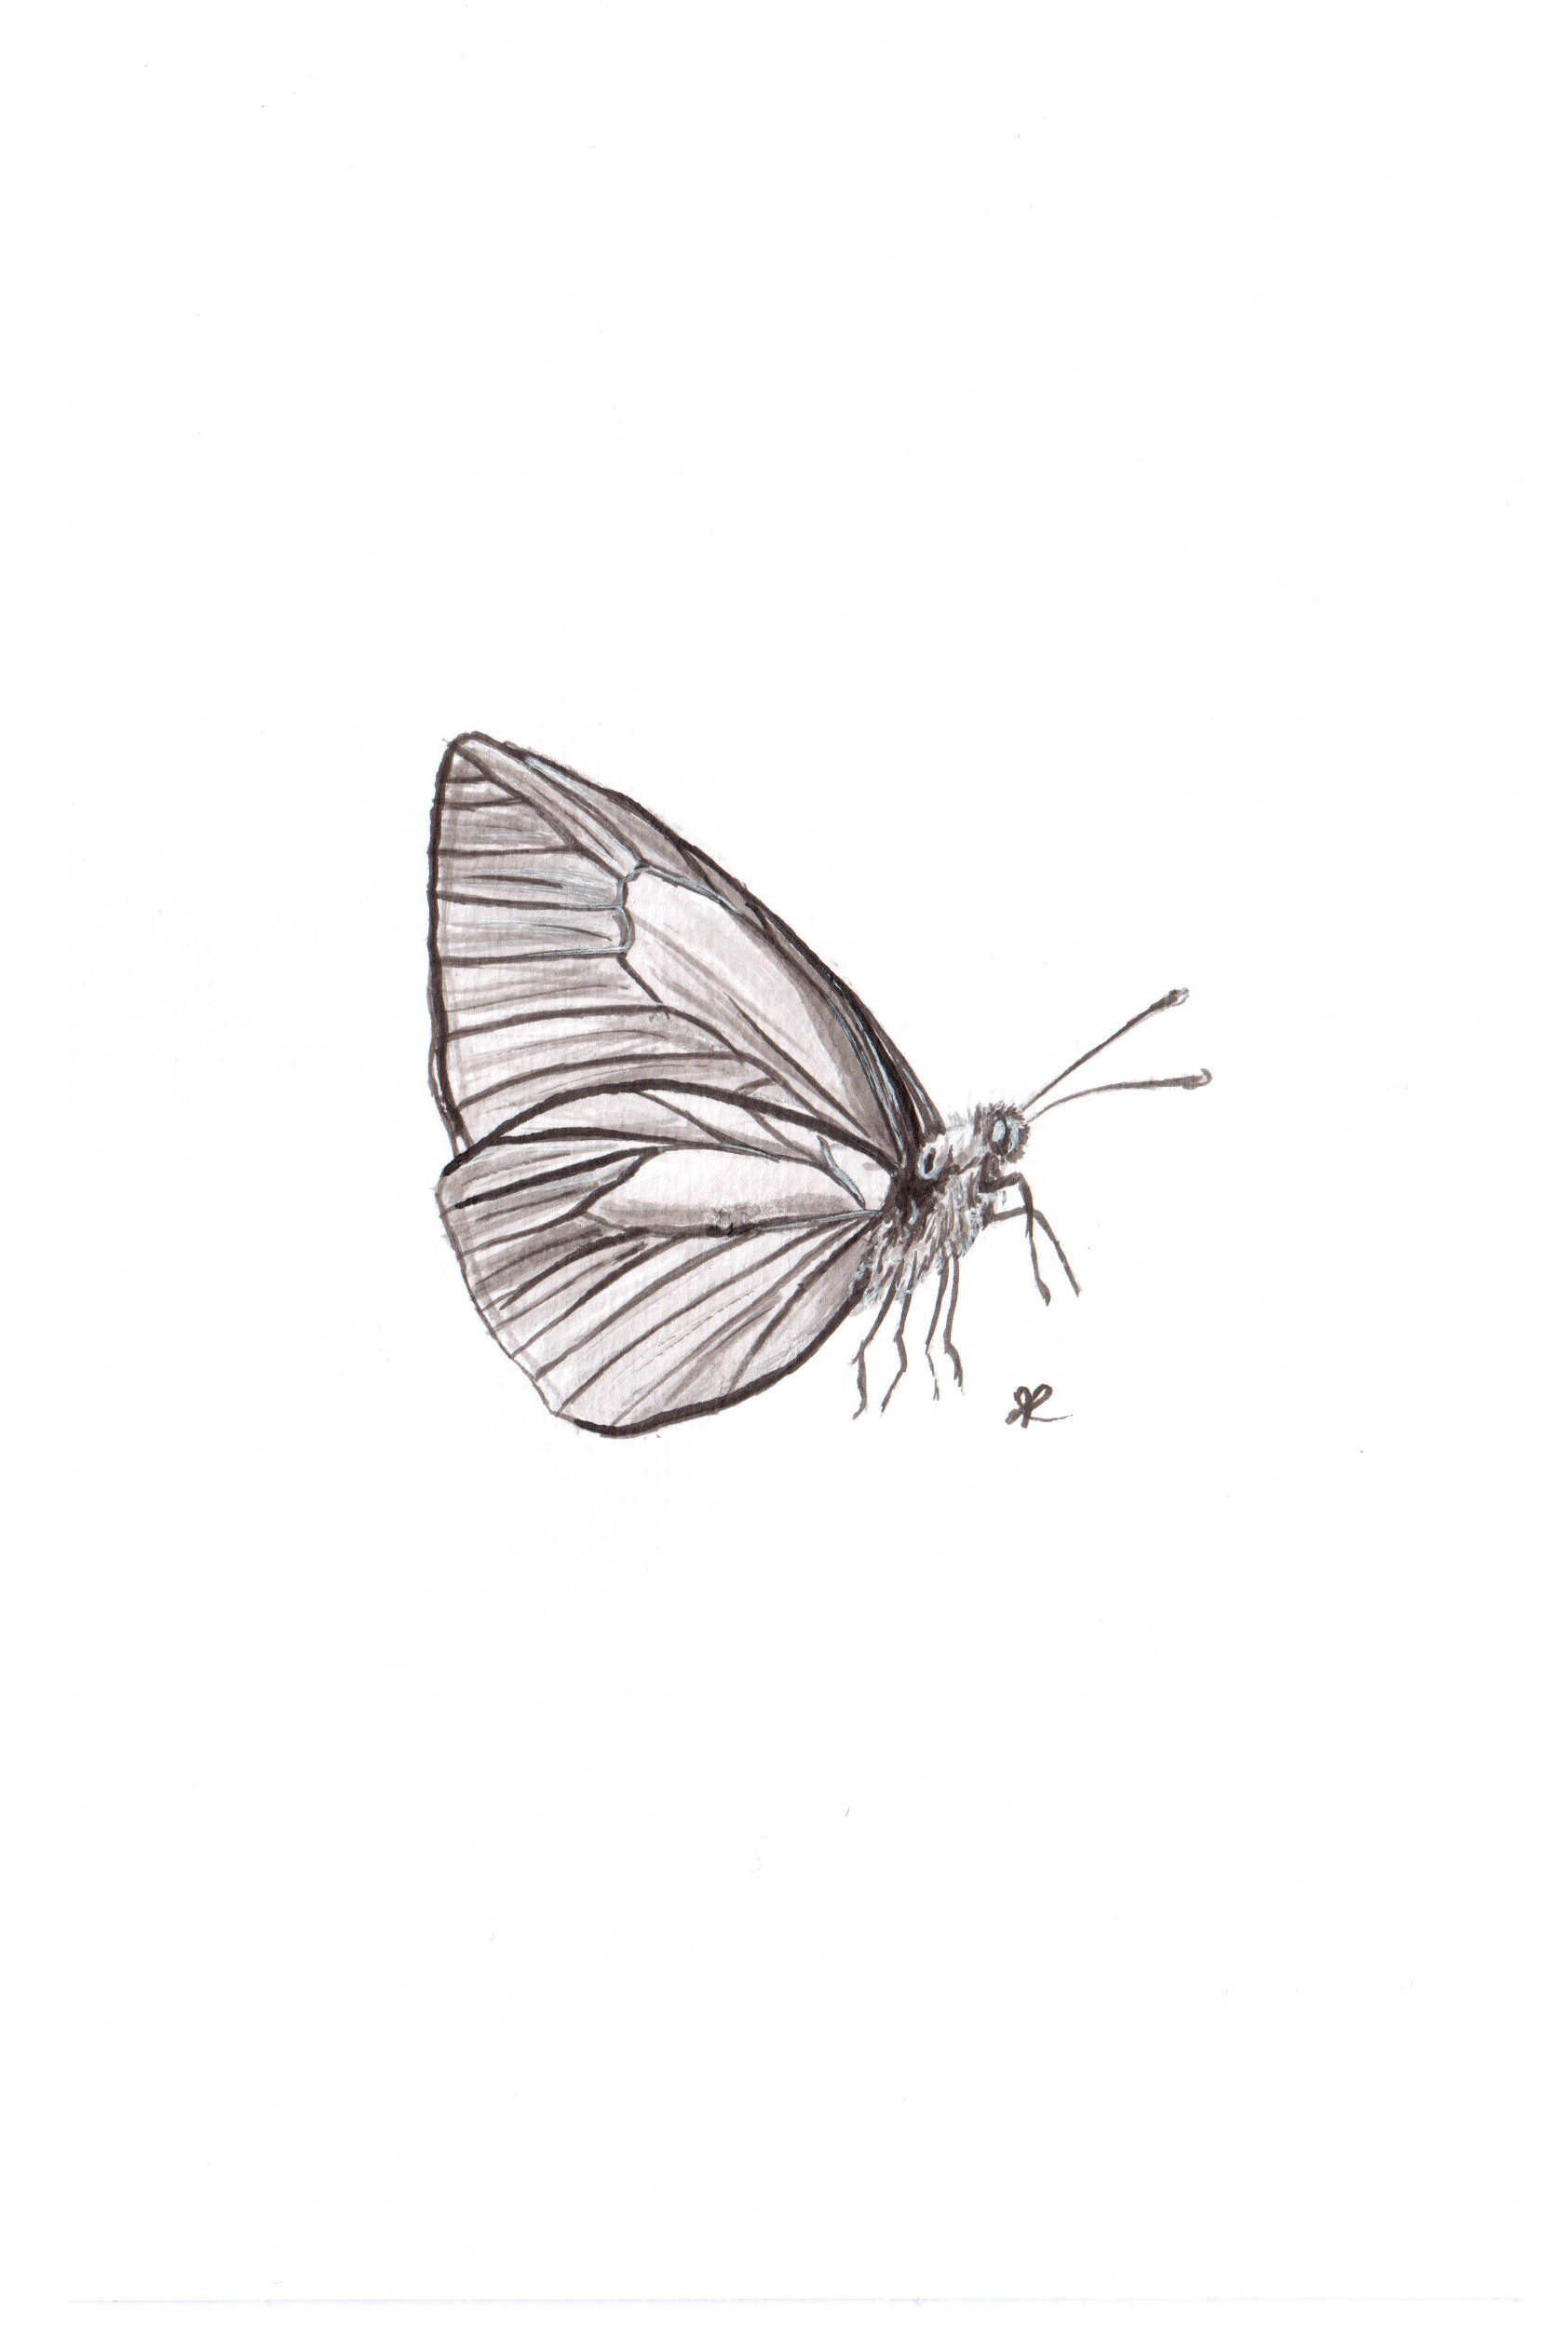 ArtStation - Butterfly